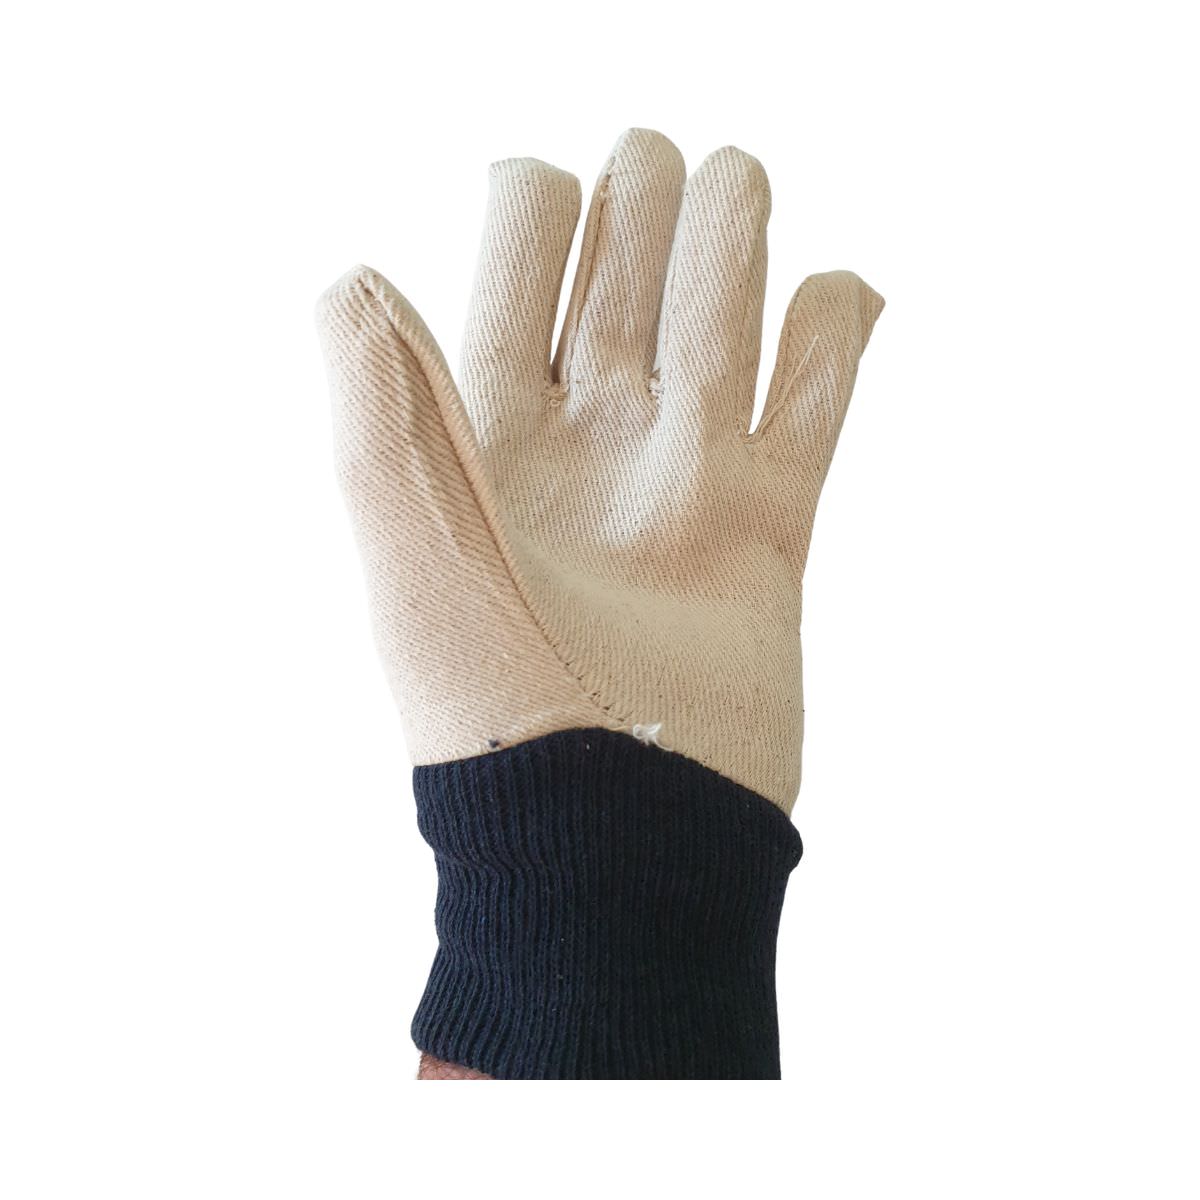 SafeRite® Cotton Drill Glove - Size Small/Medium SR747W-LOC (Pack of 12)